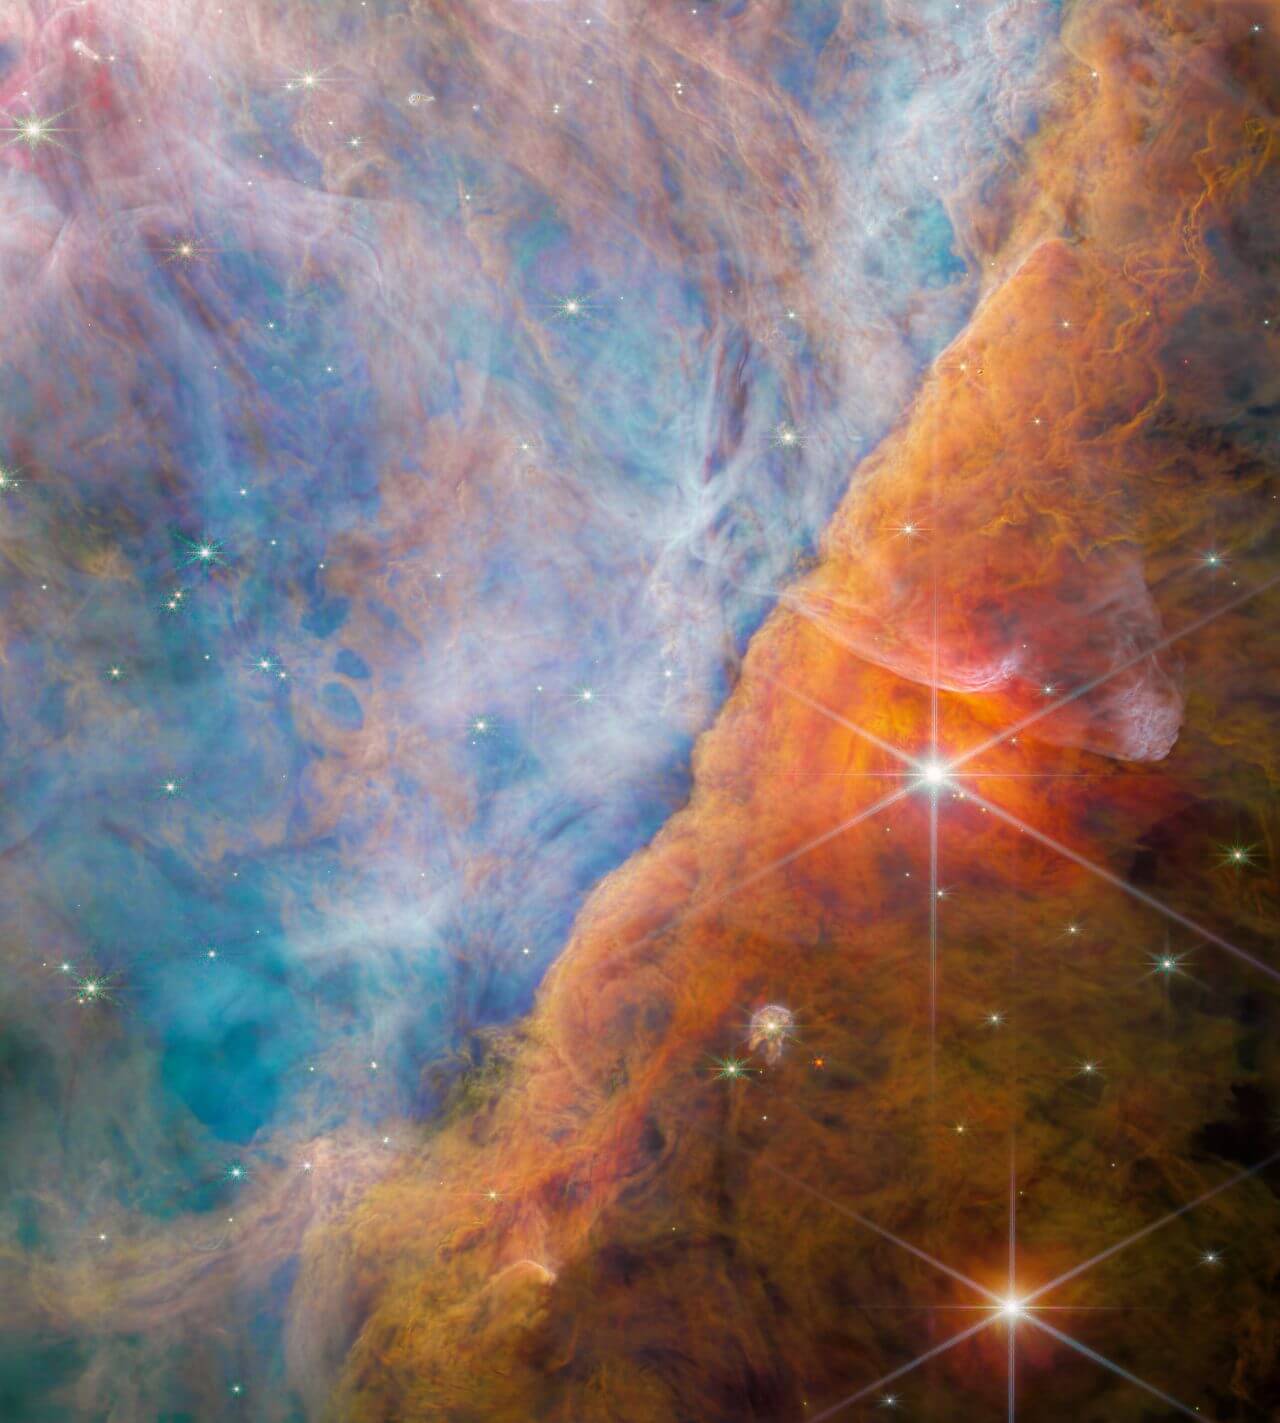 オリオン大星雲にある構造「オリオンバー」【今日の宇宙画像】